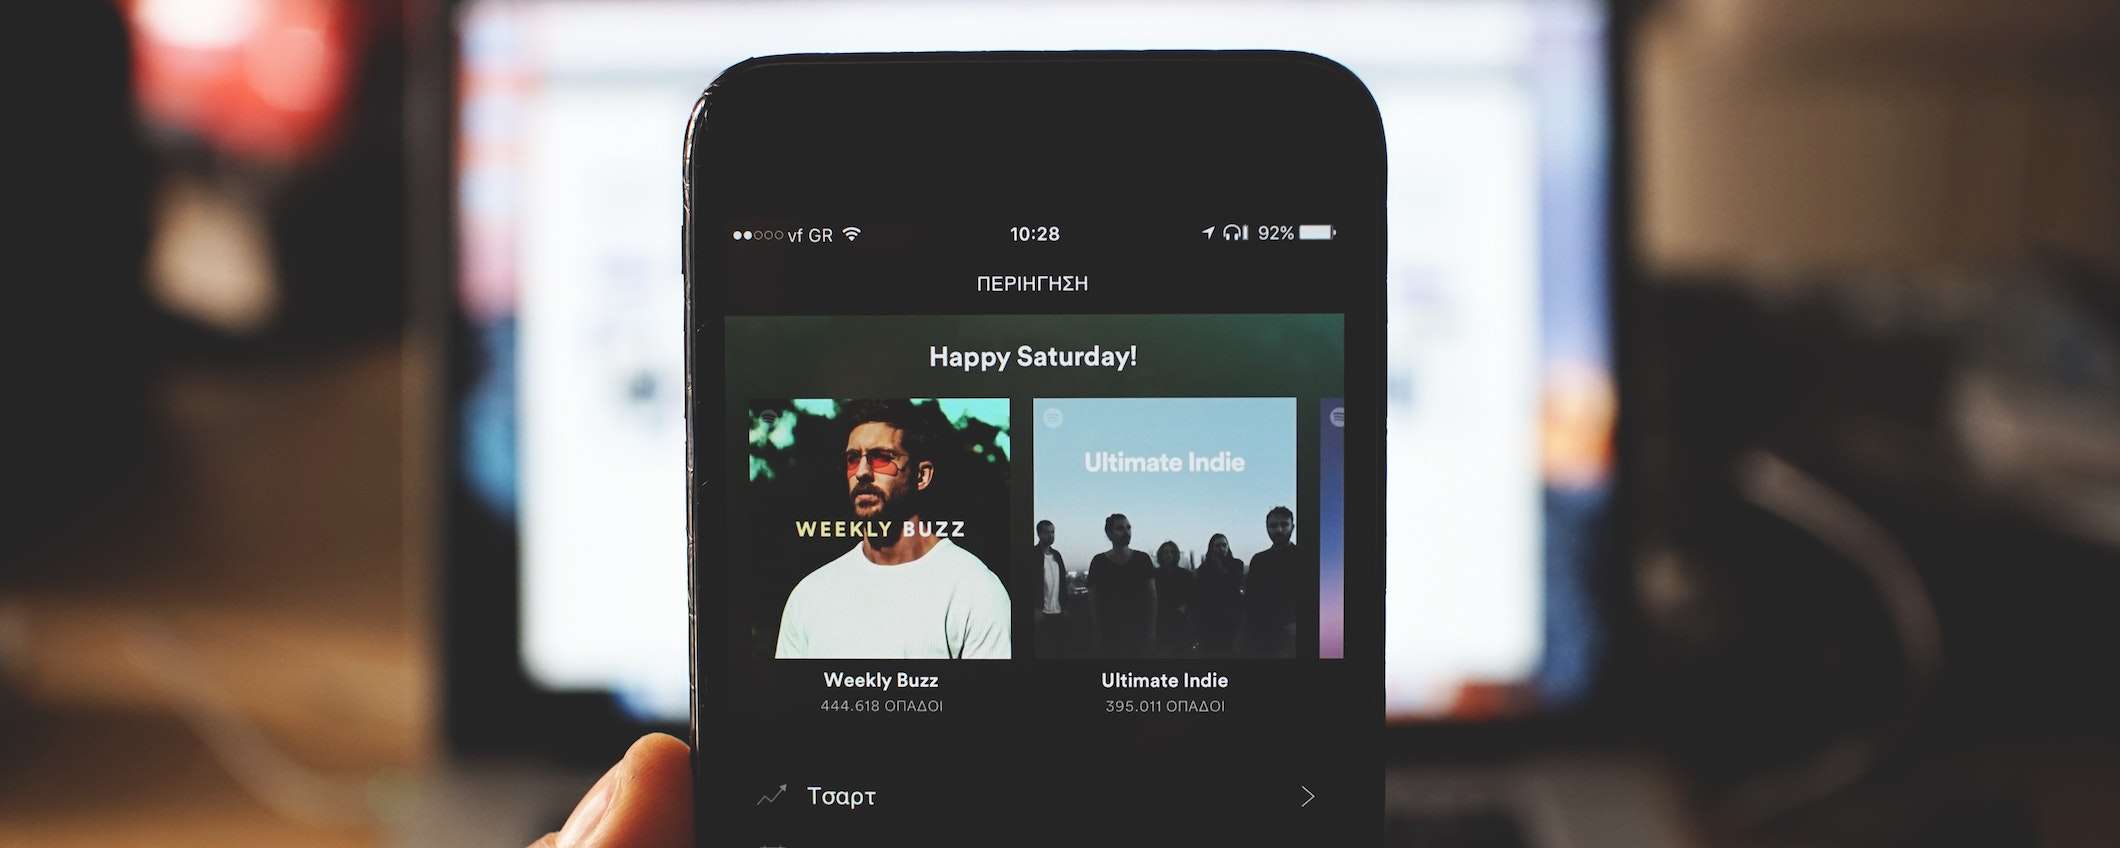 Come condividere i brani preferiti su Spotify